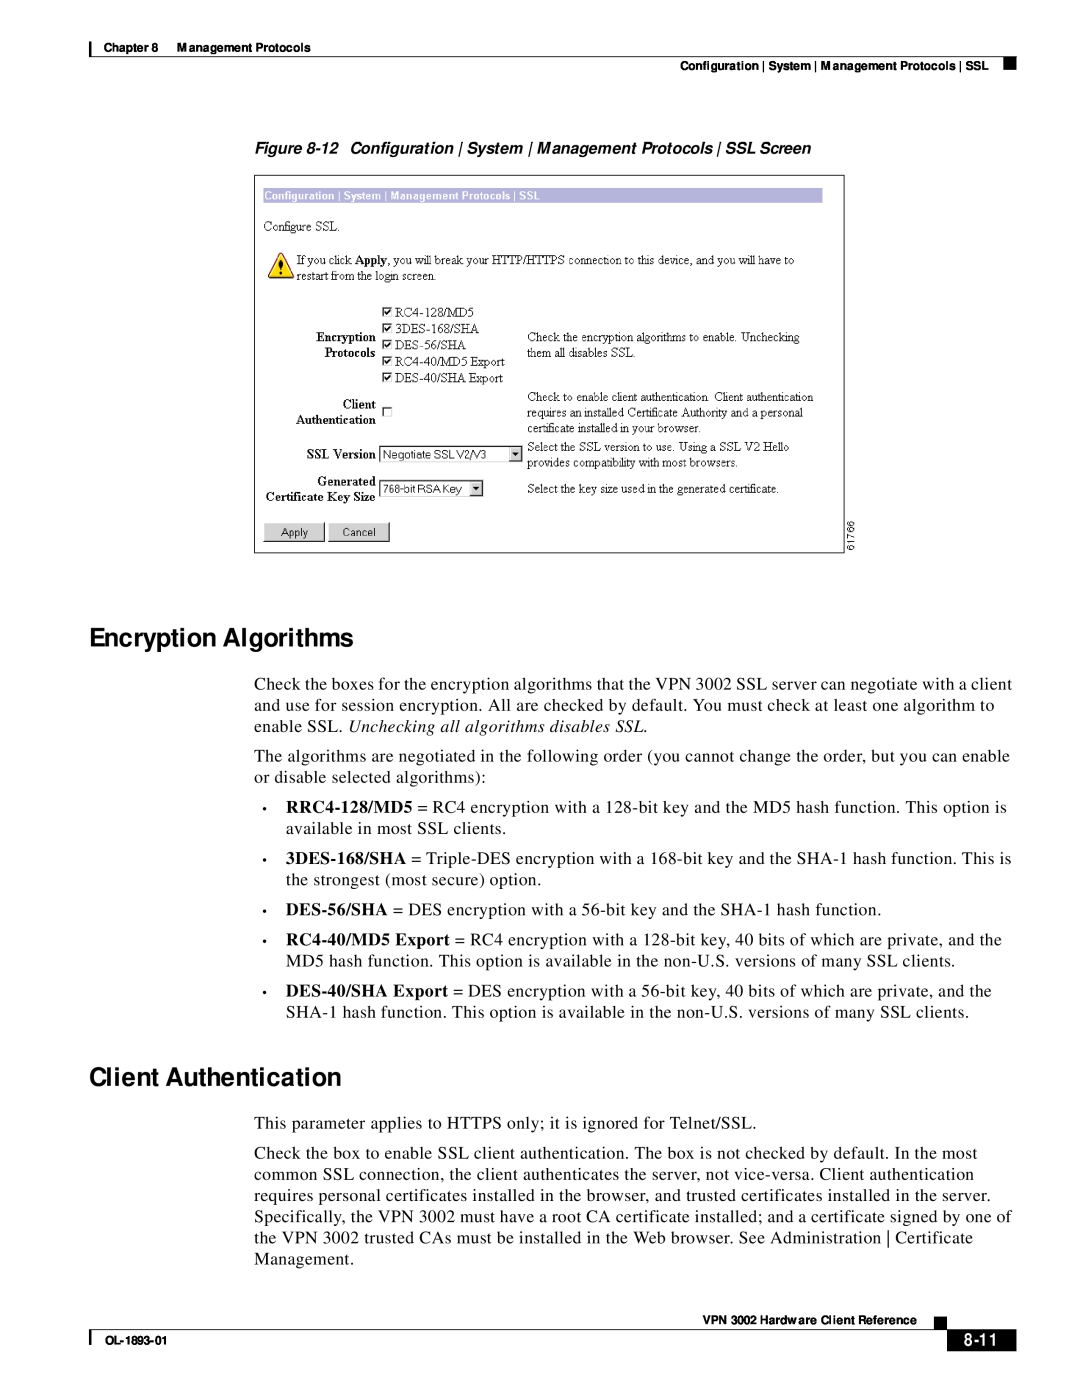 Cisco Systems VPN 3002 manual Encryption Algorithms, Client Authentication, 8-11 